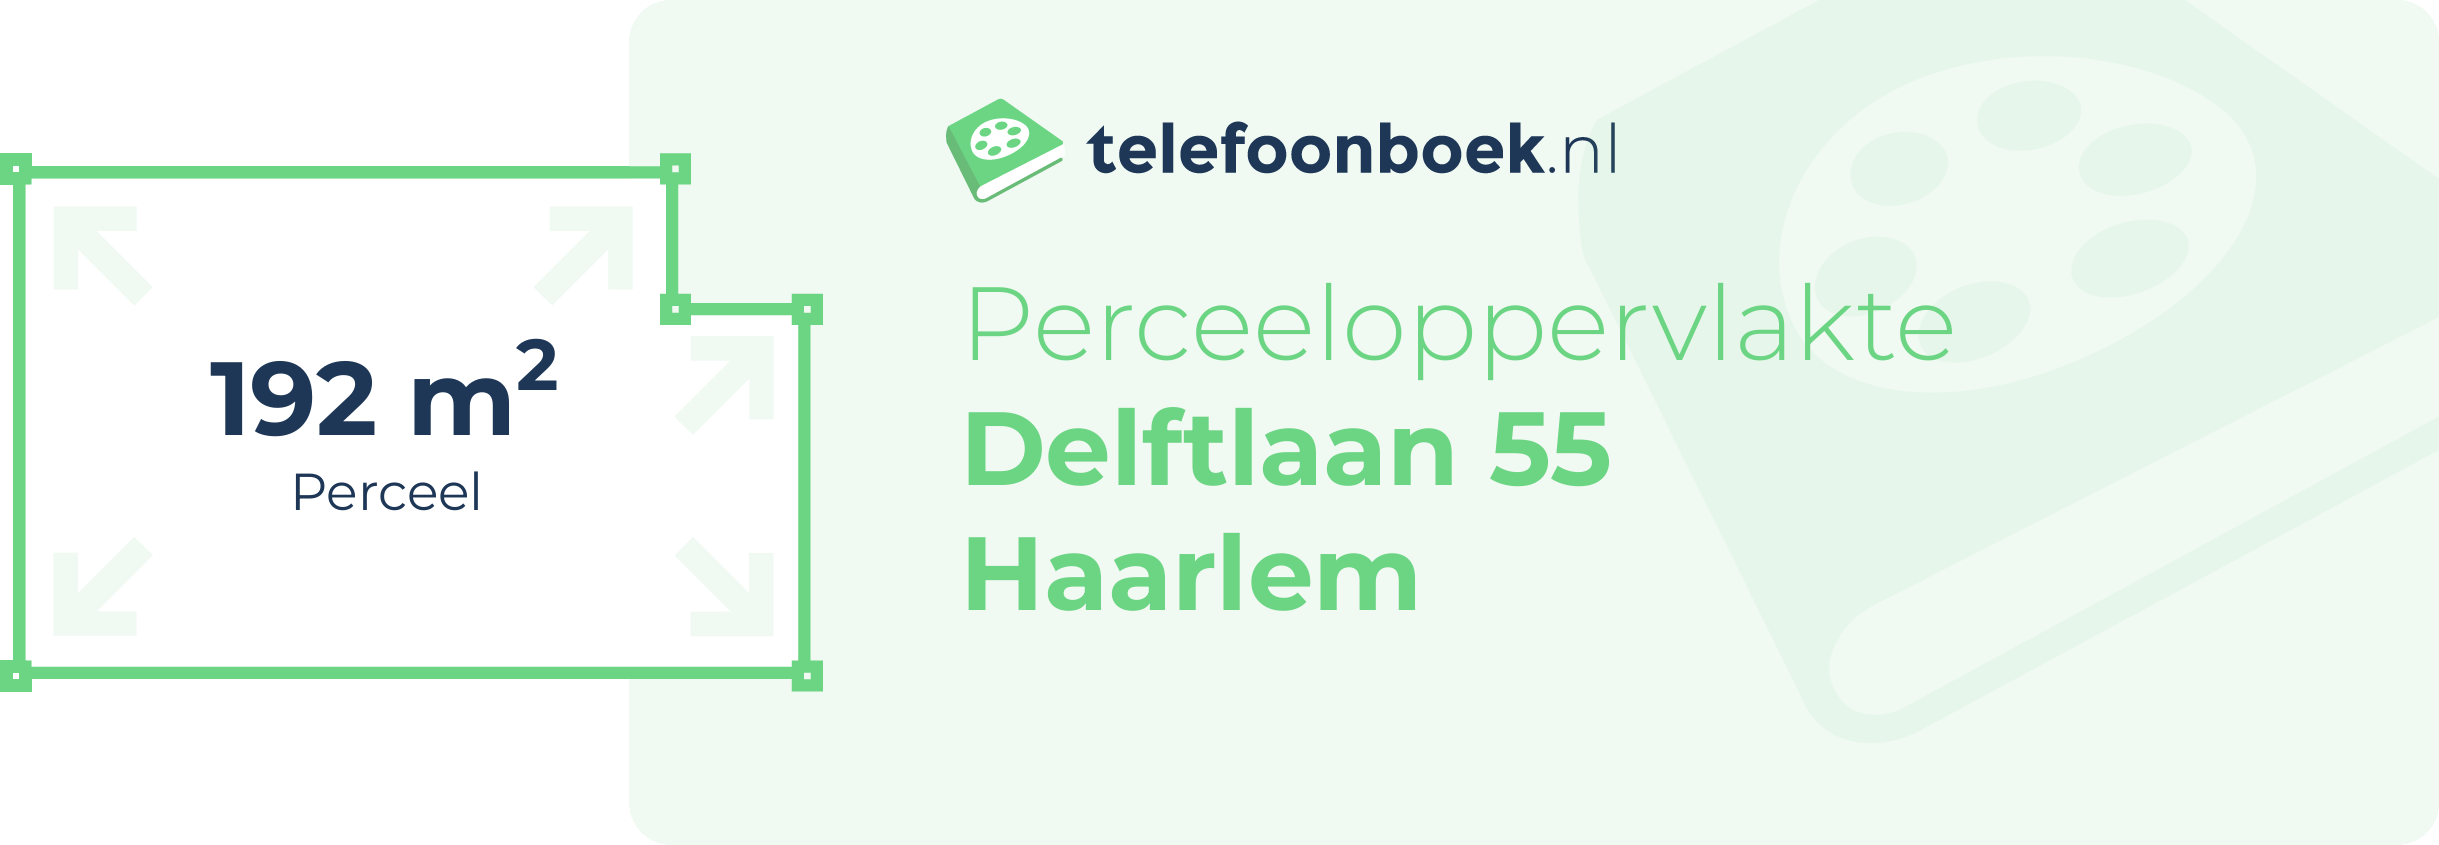 Perceeloppervlakte Delftlaan 55 Haarlem